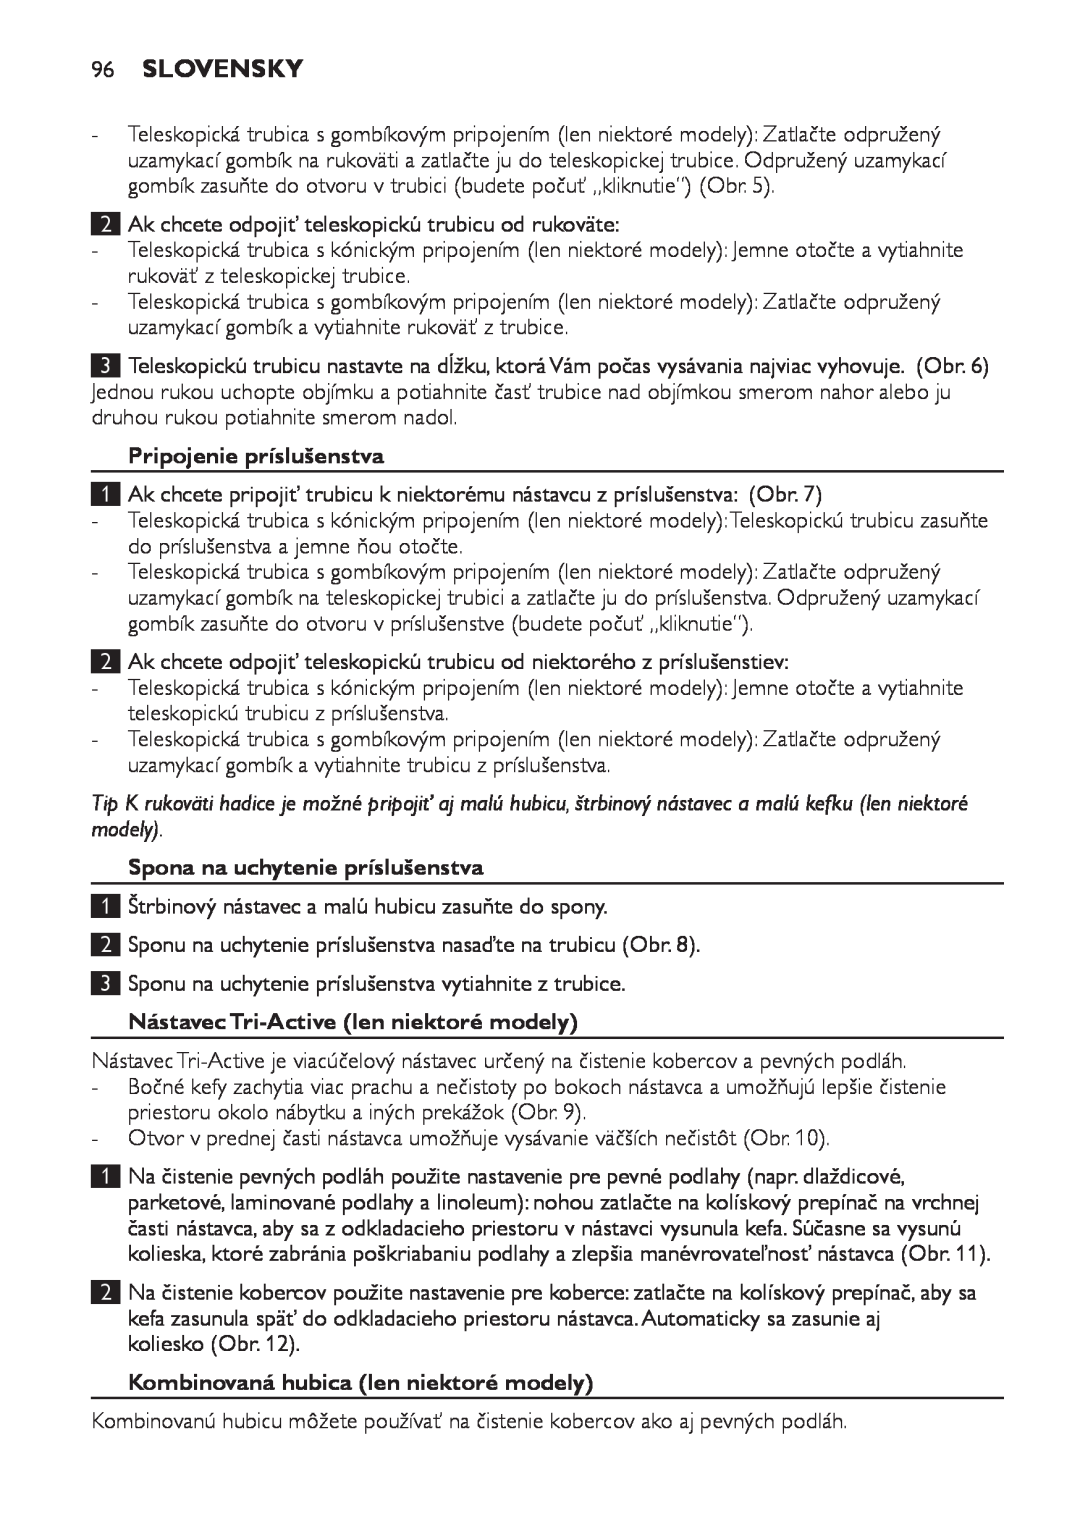 Philips FC8920-FC8910 manual 96Slovensky, Pripojenie príslušenstva, Spona na uchytenie príslušenstva 